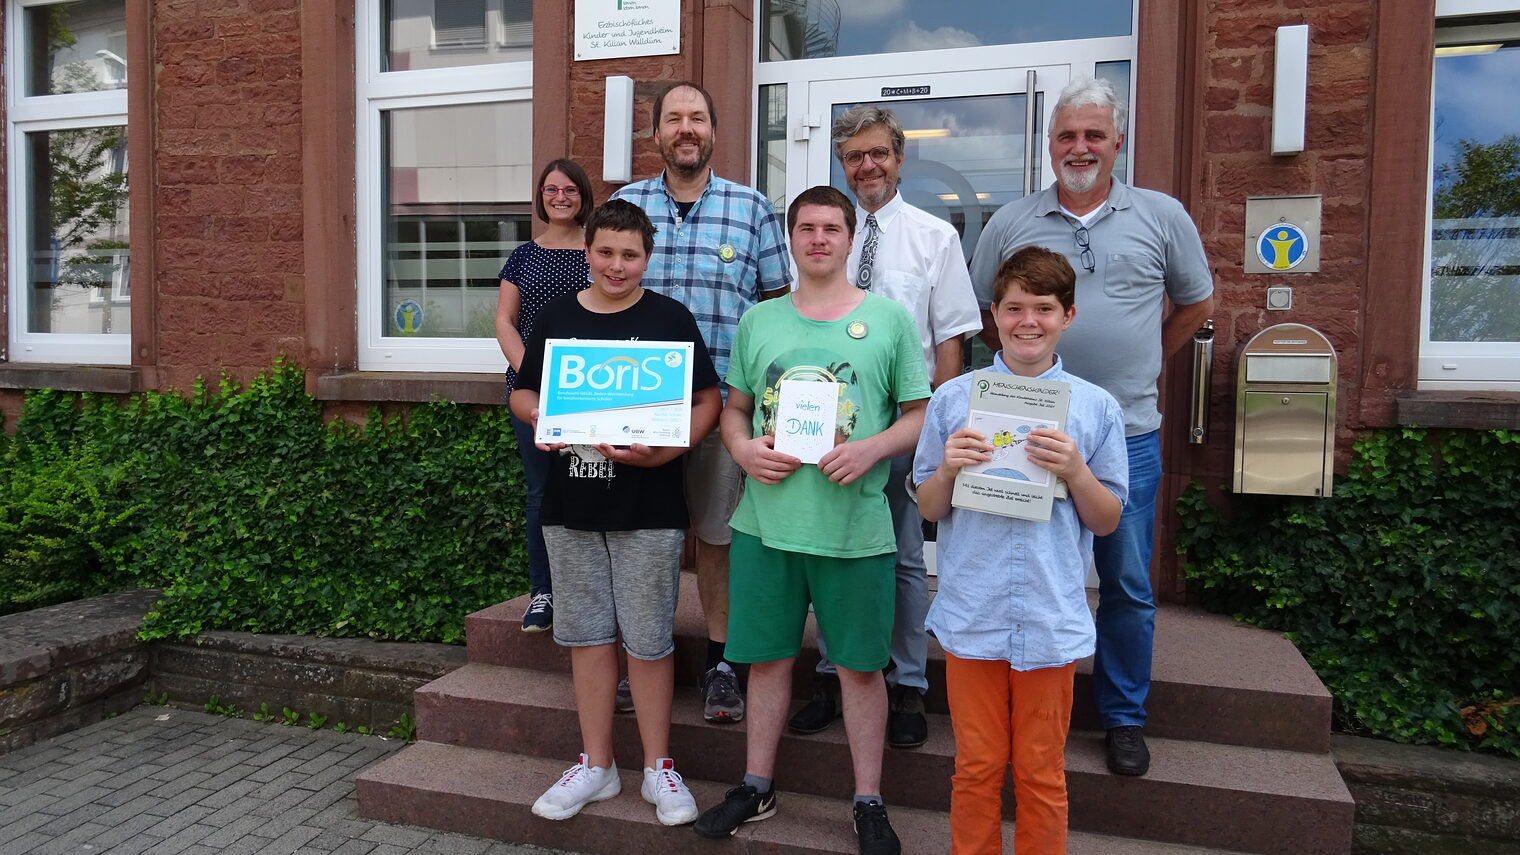 Nardini Schule_Walldürn | Das Team der Berufsorientierung der Nardini-Schule in Walldürn zusammen mit drei Schülern und dem BoriS-Berufswahlsiegel. 